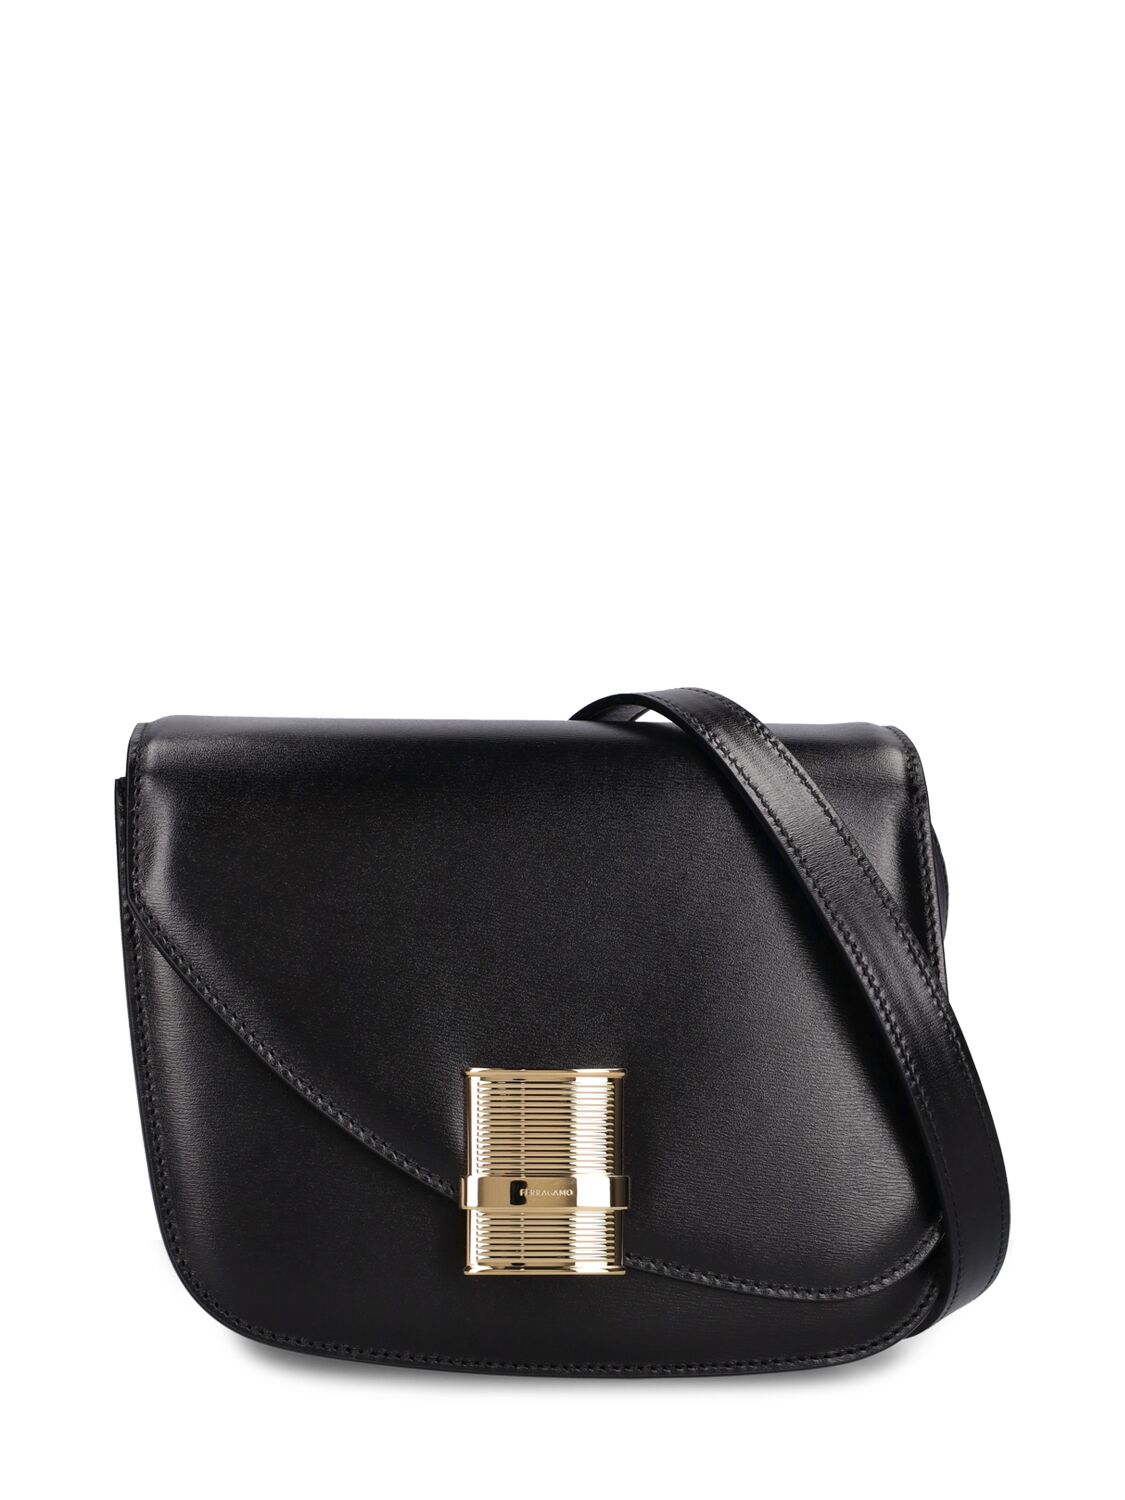 Ferragamo Small Fiamma Leather Shoulder Bag In Black